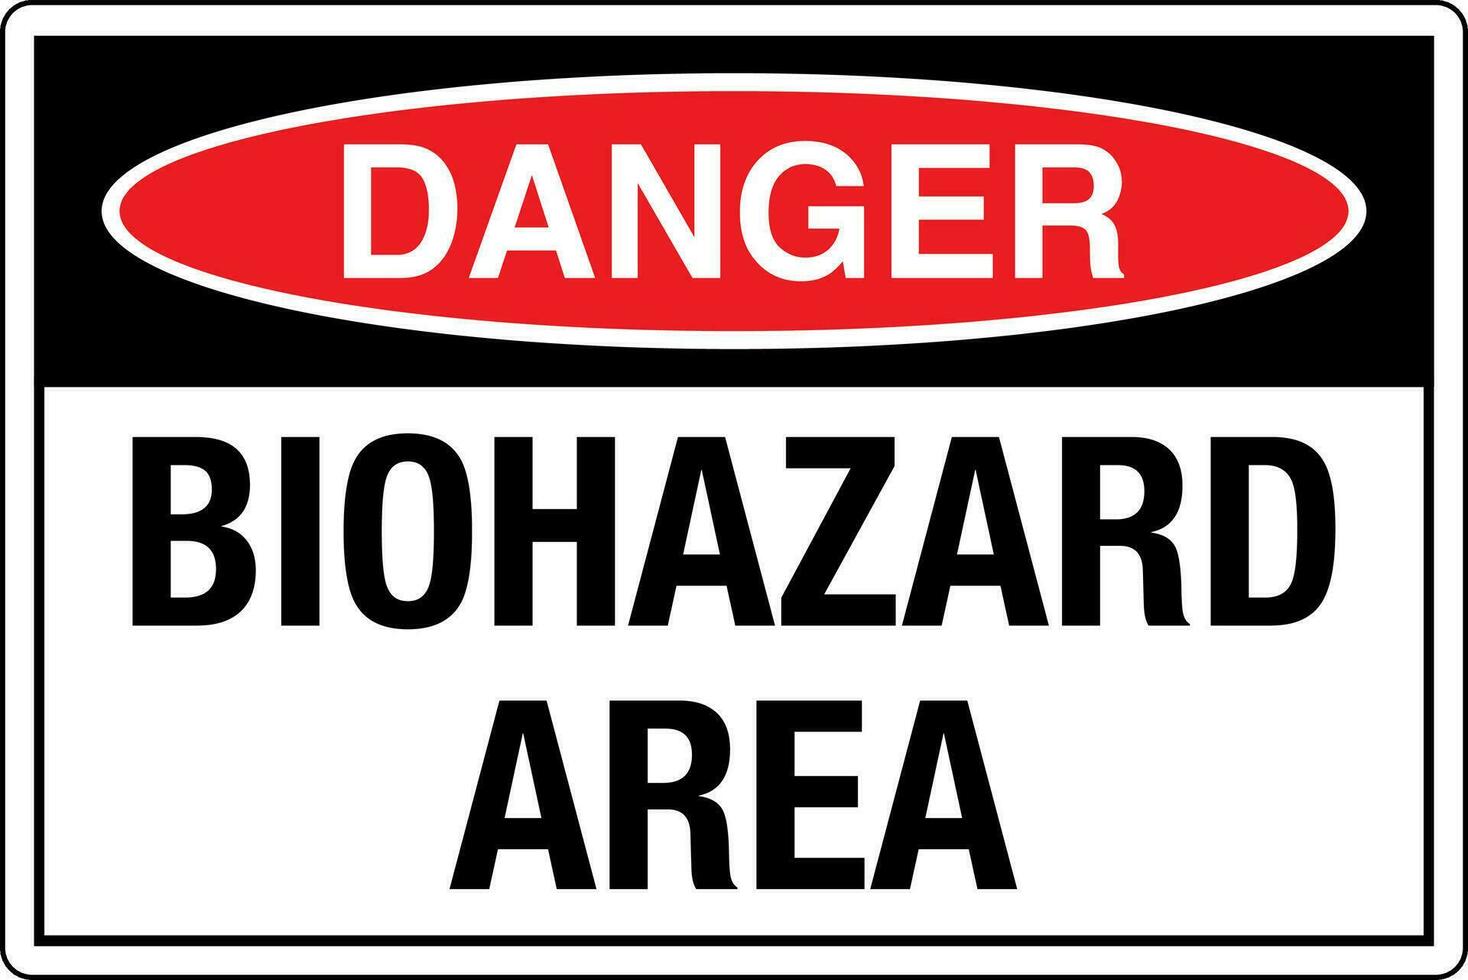 osha normes symboles inscrit lieu de travail sécurité signe danger mise en garde avertissement Danger biologique zone vecteur